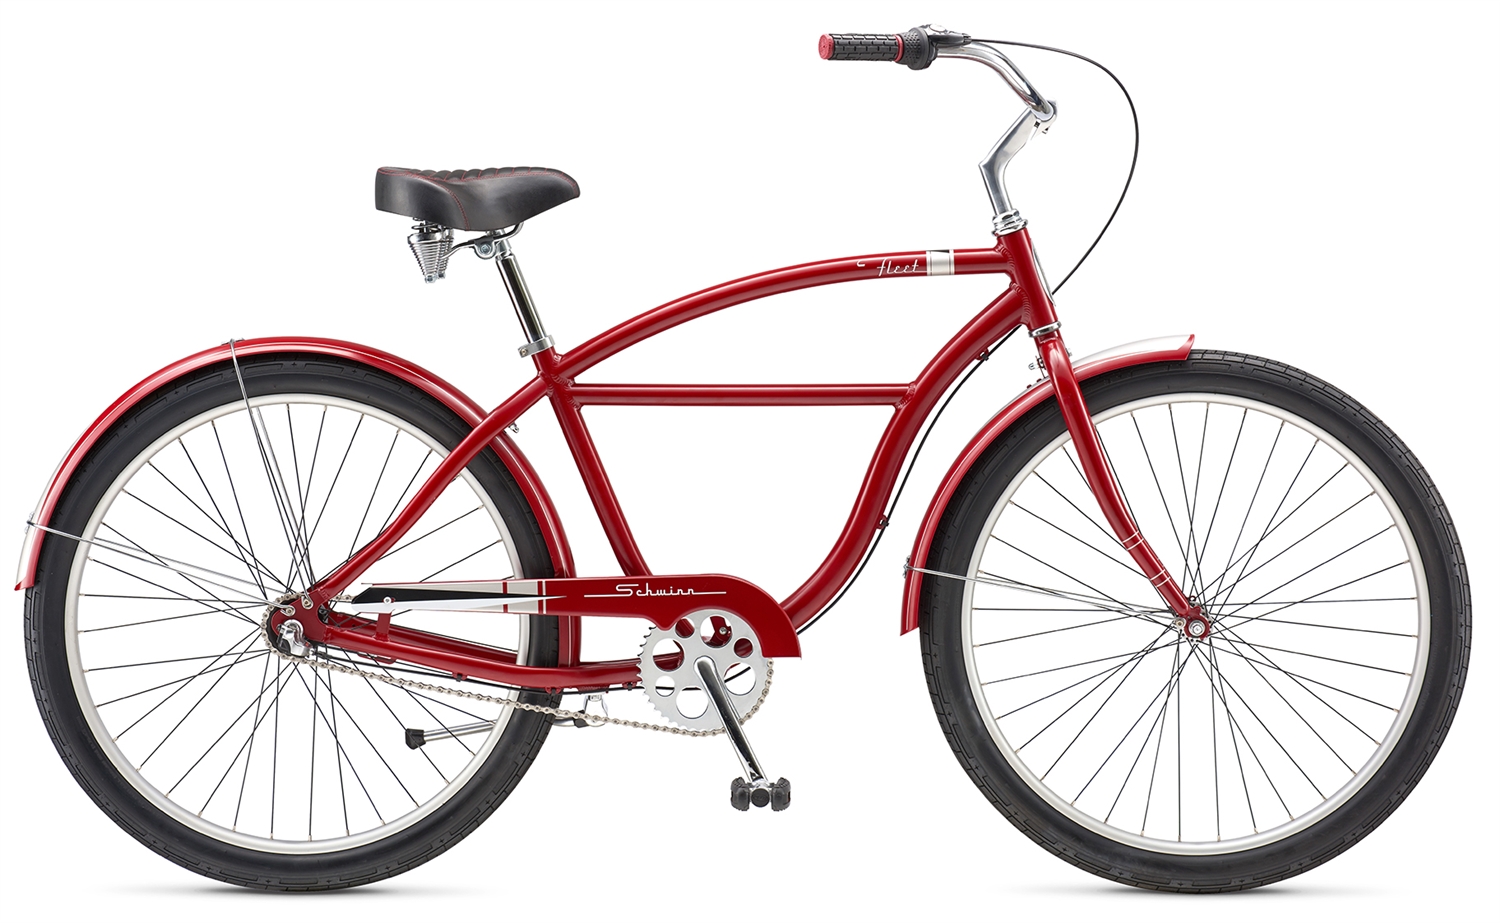 2016 SCHWINN FLEET - ko³a 27,5 cala RED - czerwony - Shimano NEXUS 3-biegi - rower miejski CRUISER - - > kliknij zdjêcie aby powiêkszyæ